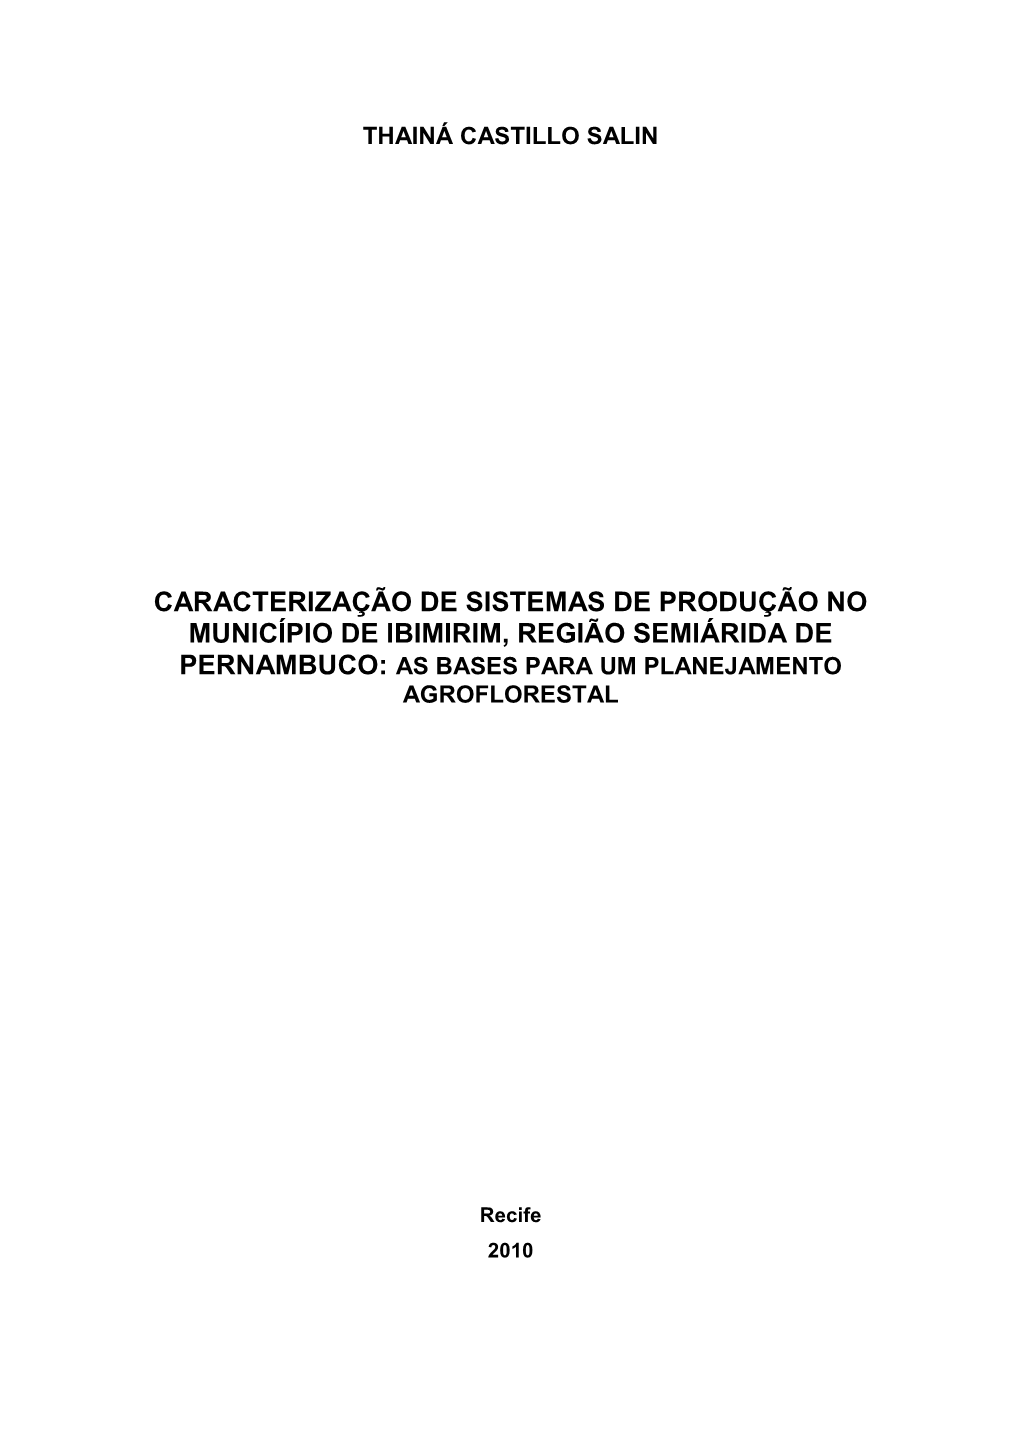 Caracterização De Sistemas De Produção No Município De Ibimirim, Região Semiárida De Pernambuco: As Bases Para Um Planejamento Agroflorestal